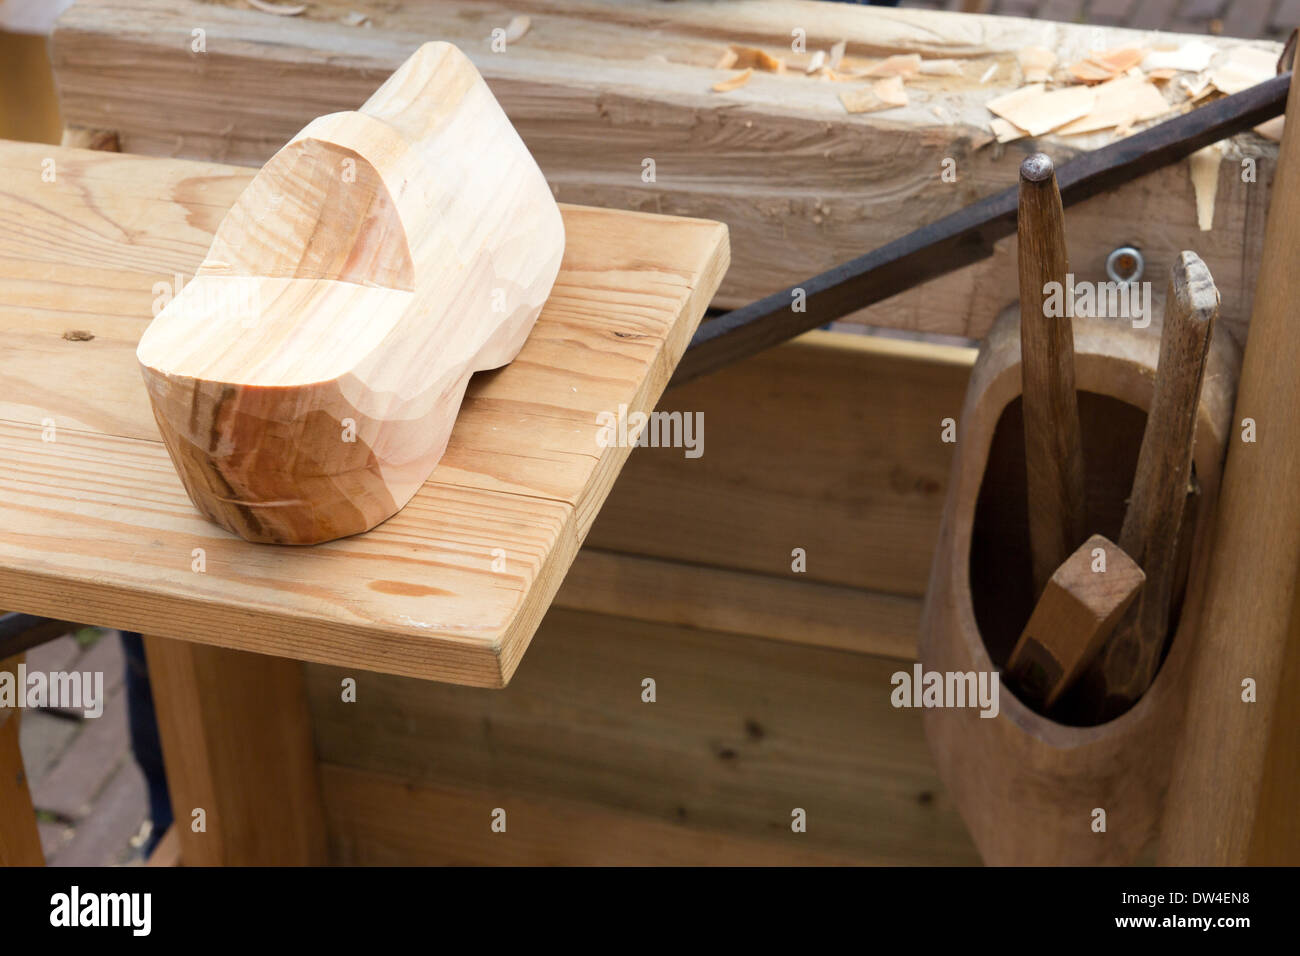 La fabrication de sabots en bois traditionnel néerlandais Banque D'Images